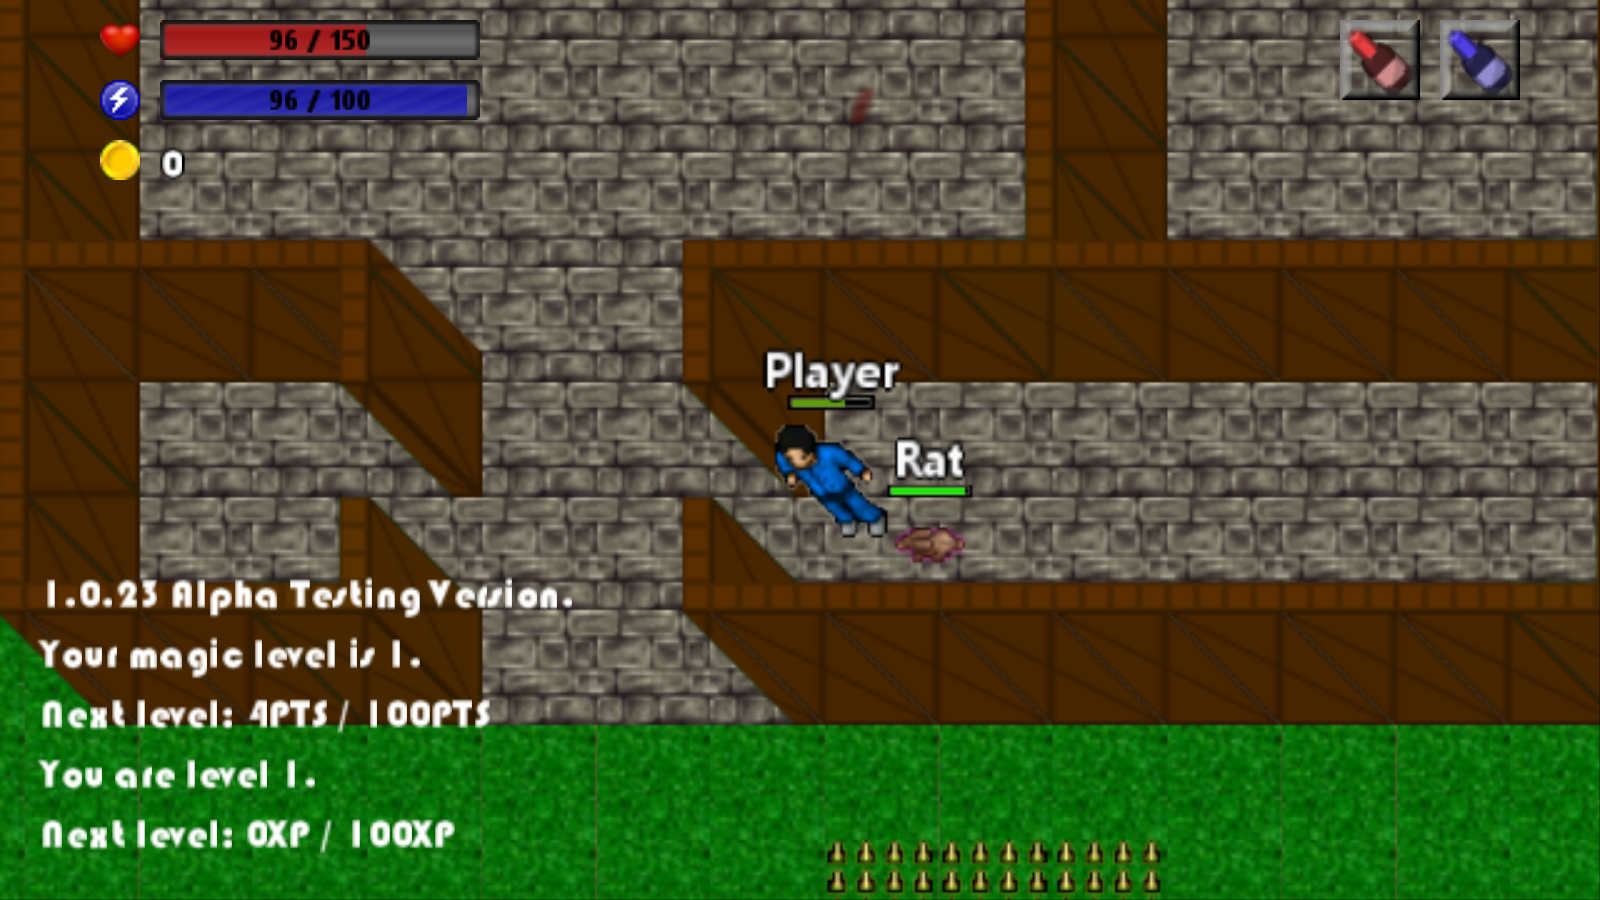 a player next to a rat